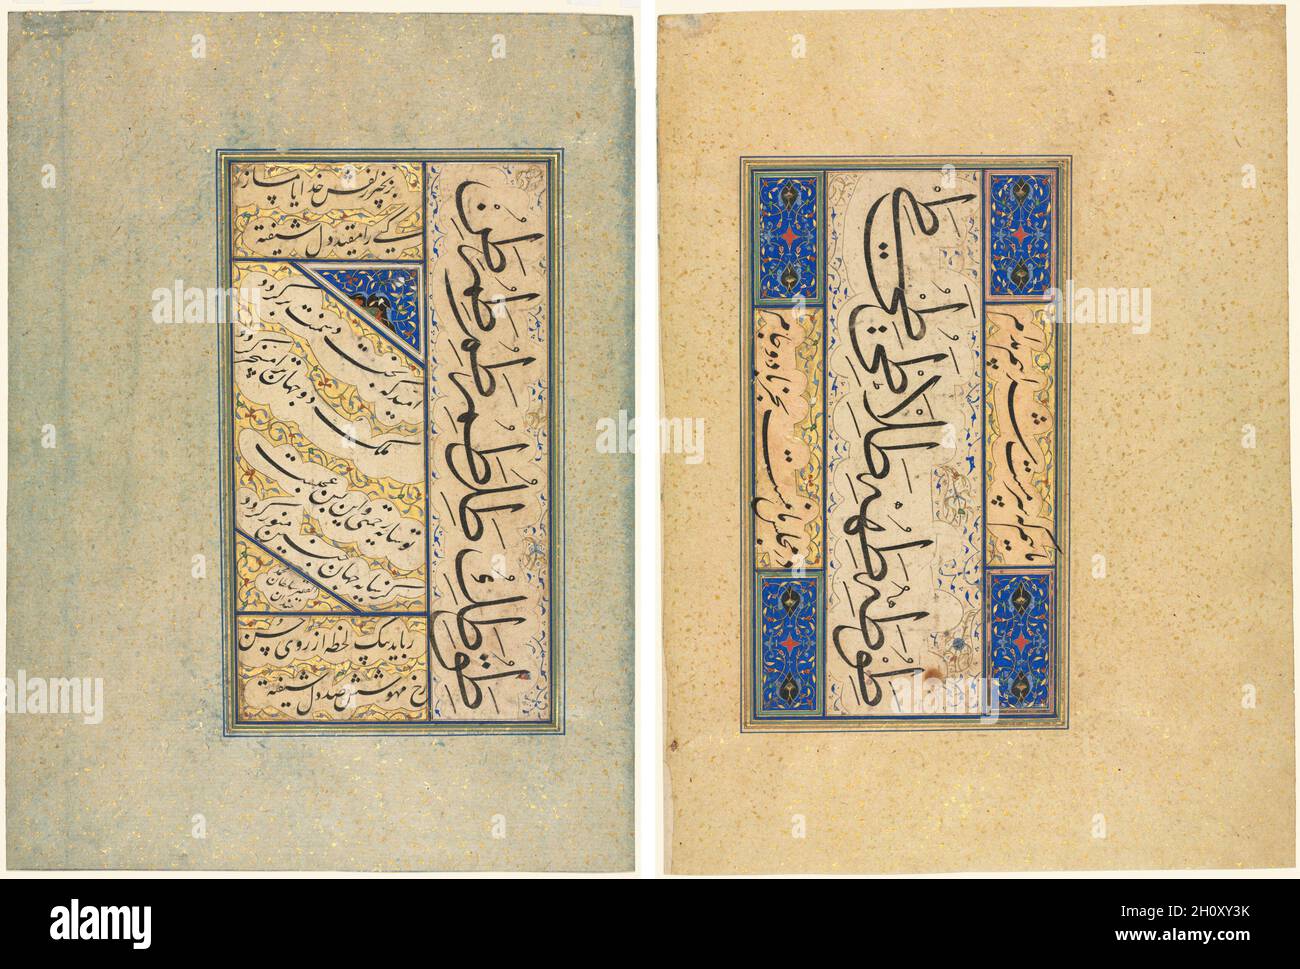 Quatraini persiani (Rubayi) ed esercizi calligrafici (recto); versi  persiani (khamriyya) (verso), c.. 1509–50. Sultan Muhammad Khanan  (Iraniano, morto dopo il 1550). Inchiostro, oro e acquerello opaco sulla  carta; questa pagina contiene due